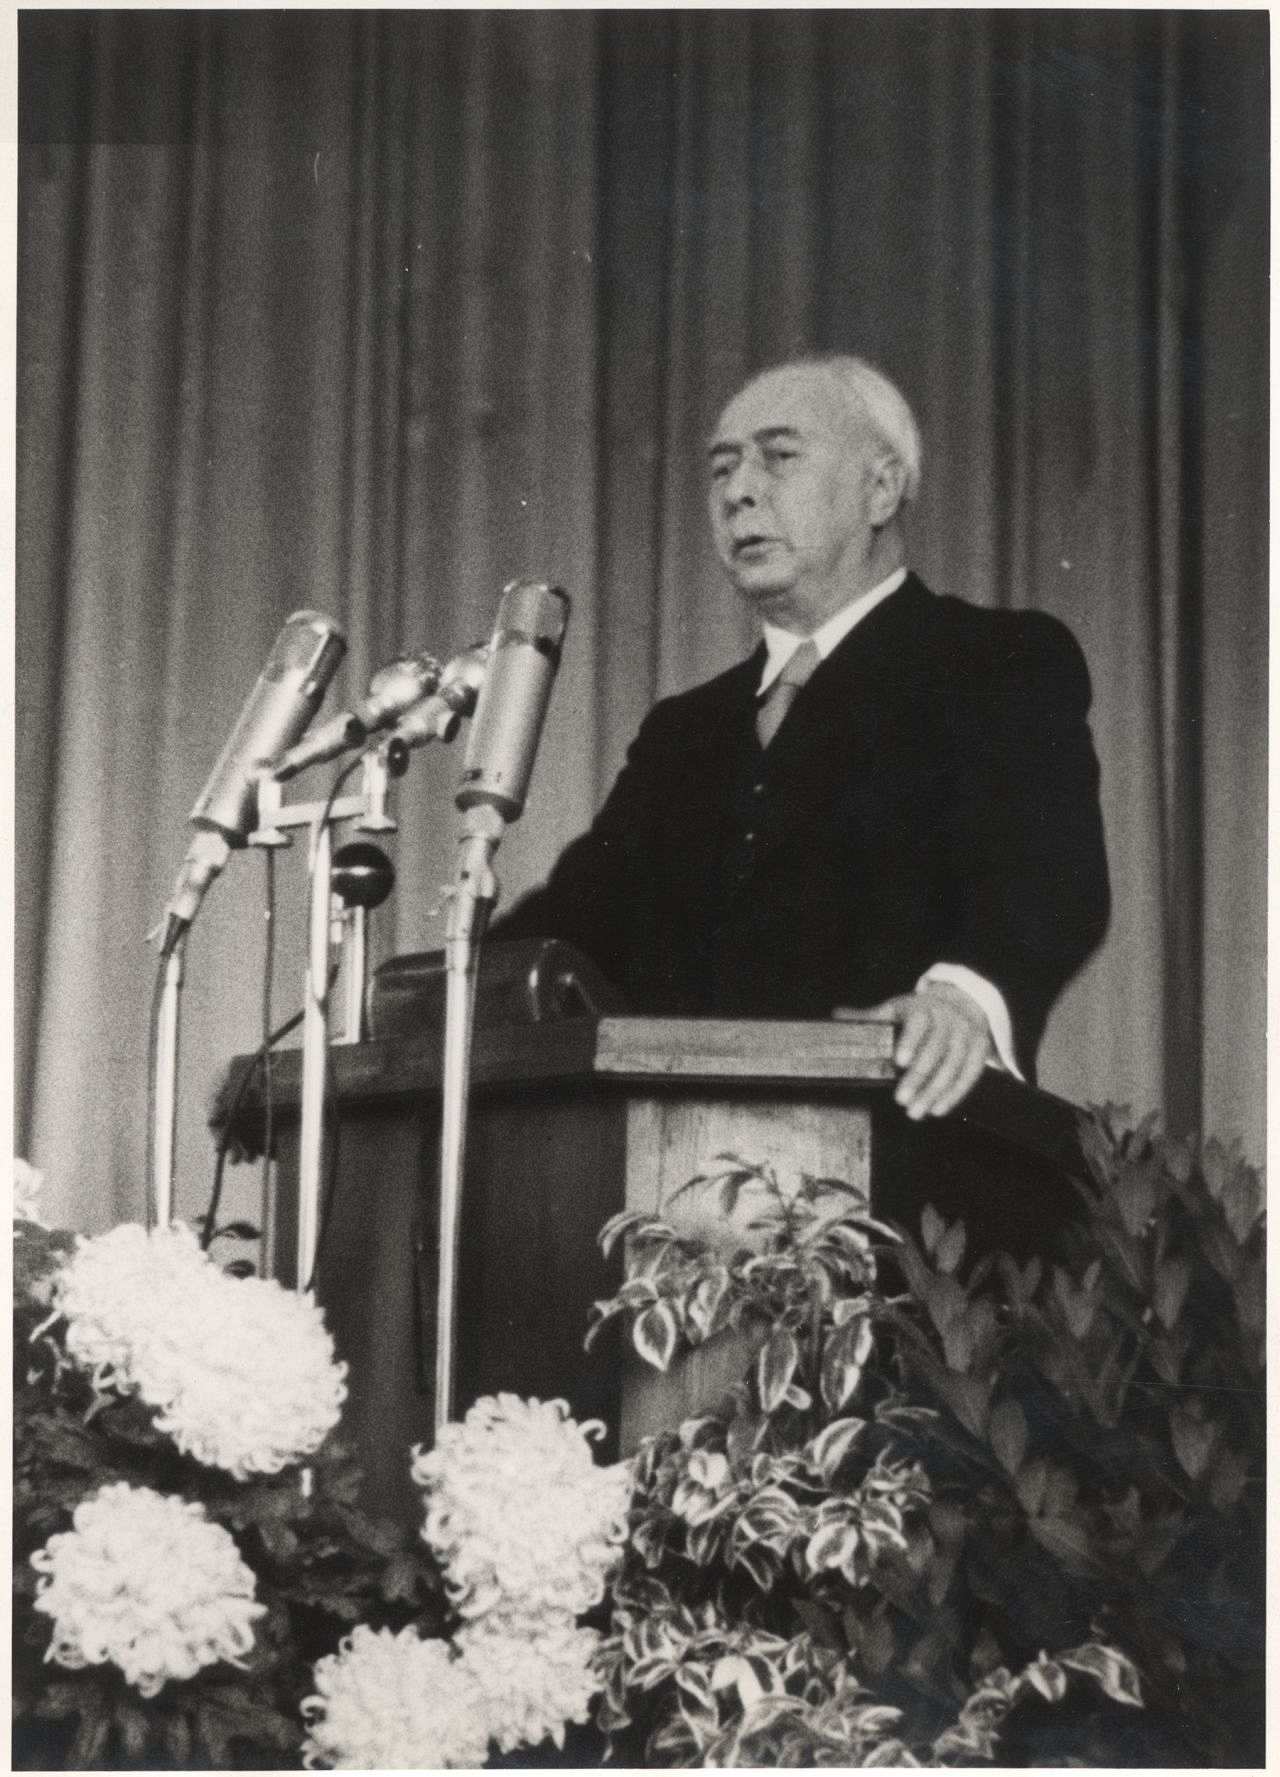 Bundespräsident Theodor Heuss bei einer Ansprache auf einer Gedenkfeier des VDI (Verein Deutscher Ingenieure) anläßlich des 75-jährigen Jubiläums des Otto-Motors, 1953. 